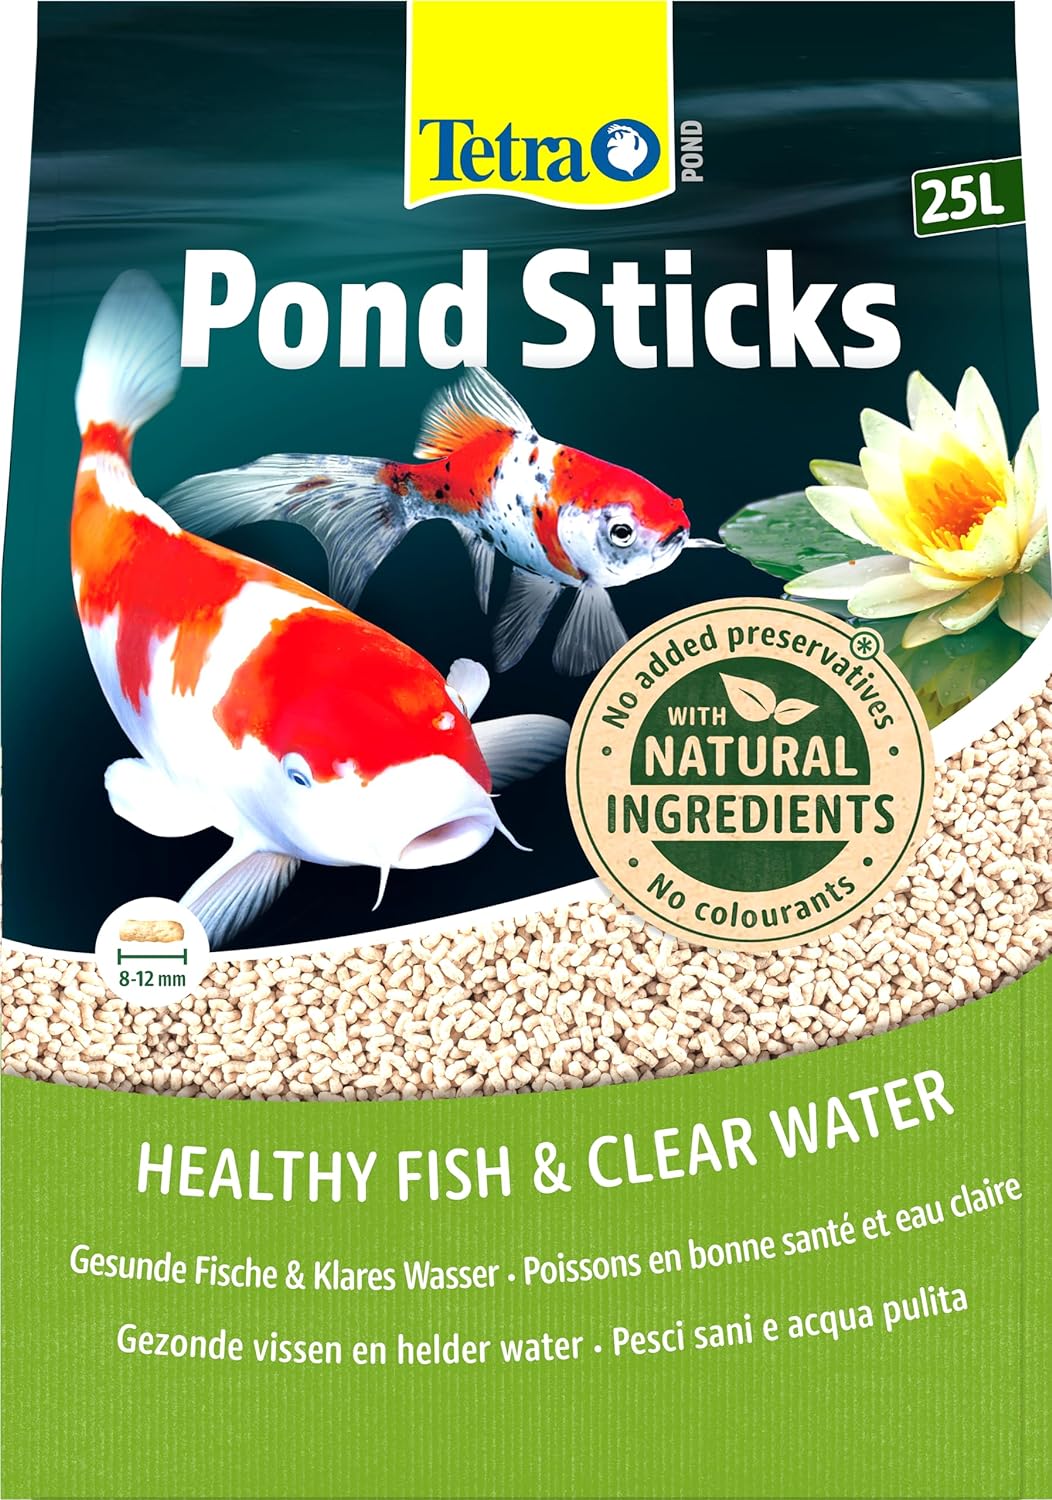 tetra-pond-sticks-25l-aliment-complet-en-sticks-pour-tous-poissons-de-bassin